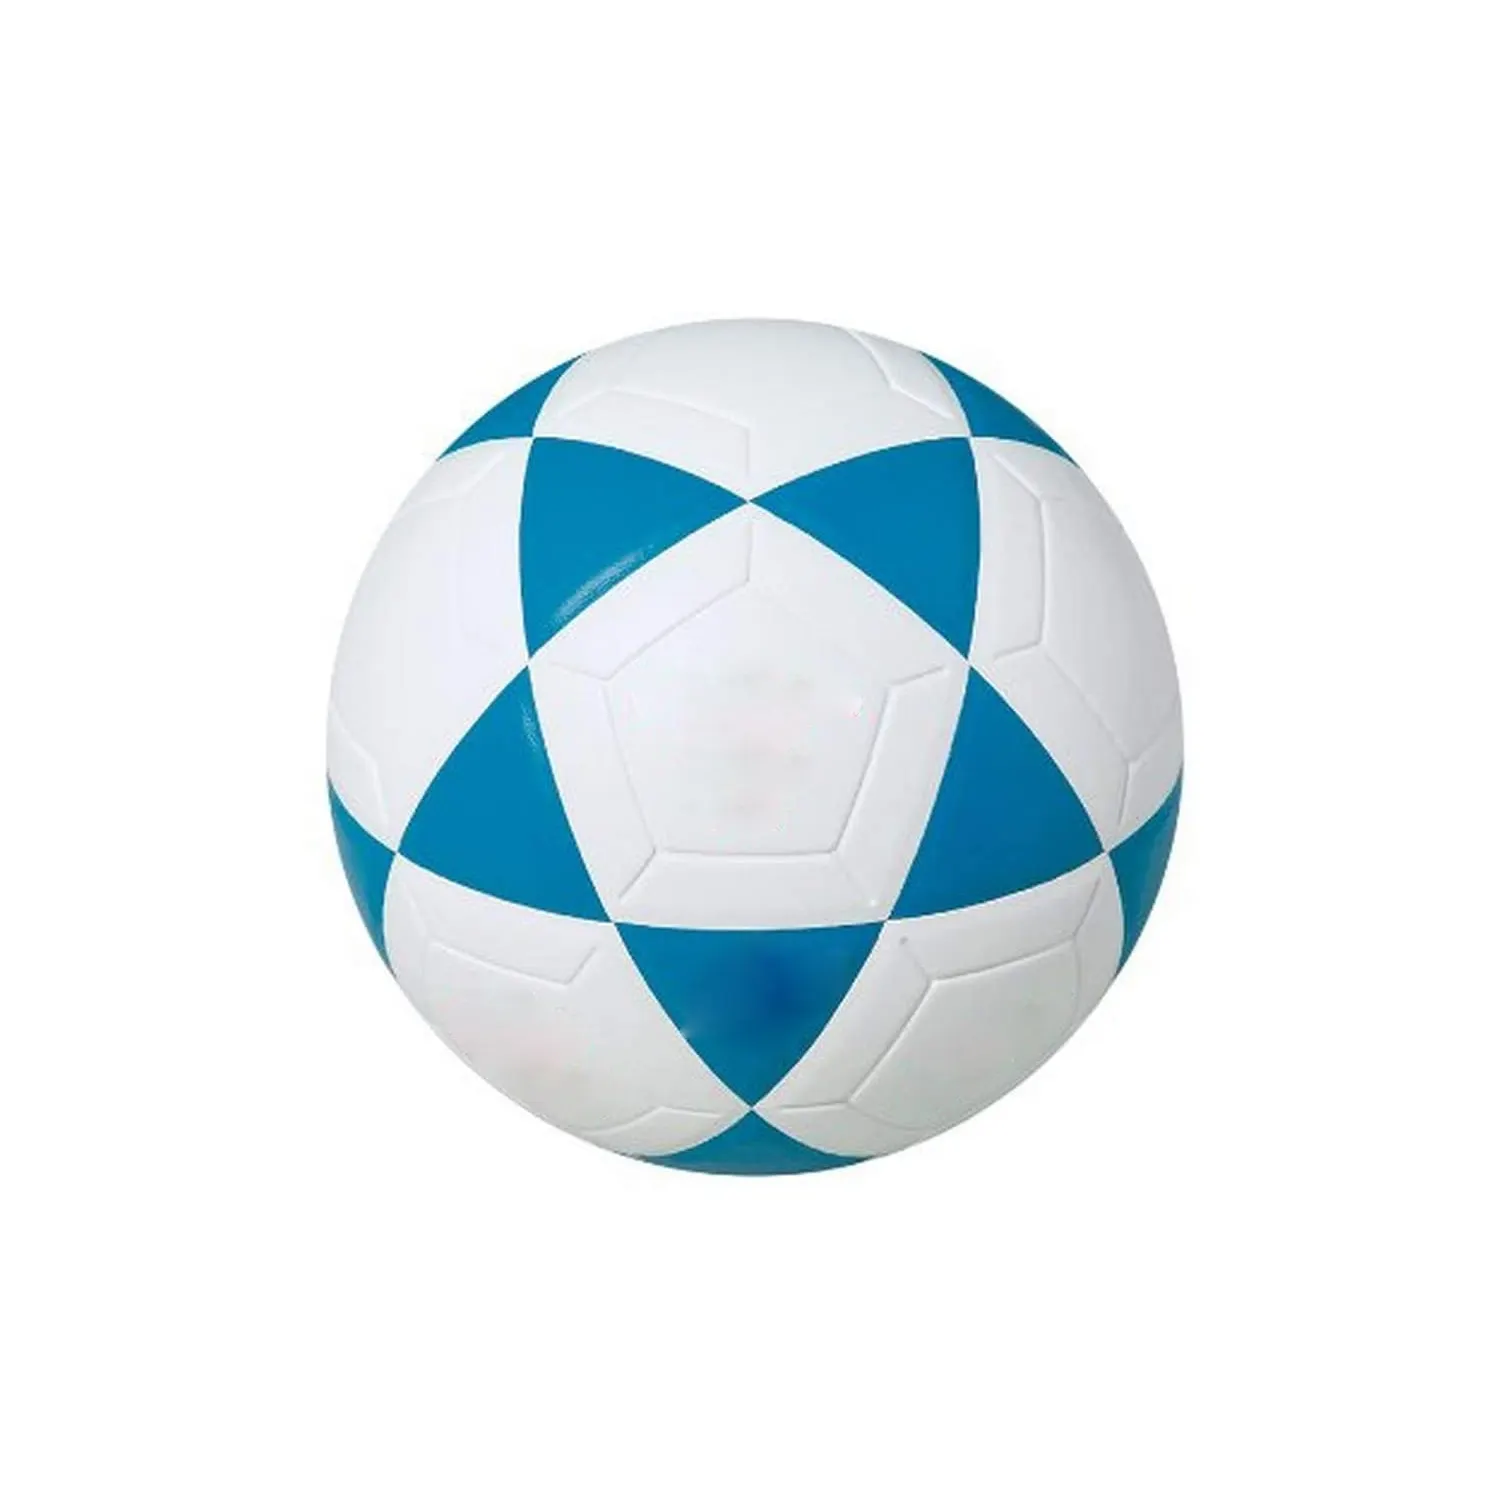 Bolas de fútbol personalizadas con estampado de Color azul, tamaño estándar, equipo deportivo